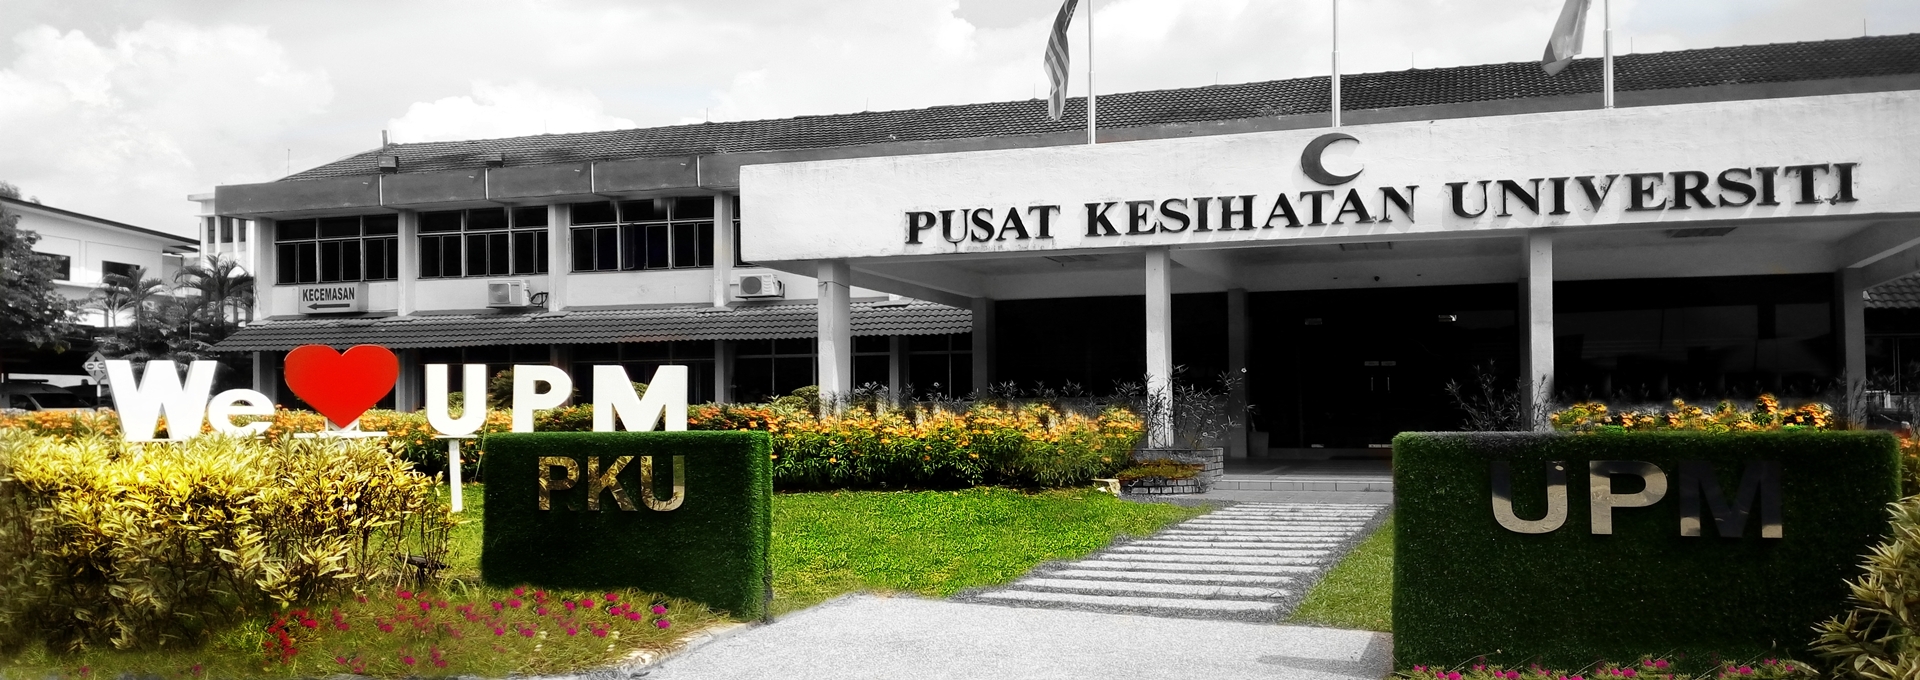 Pusat Kesihatan Universiti UPM. Sejak 1974.